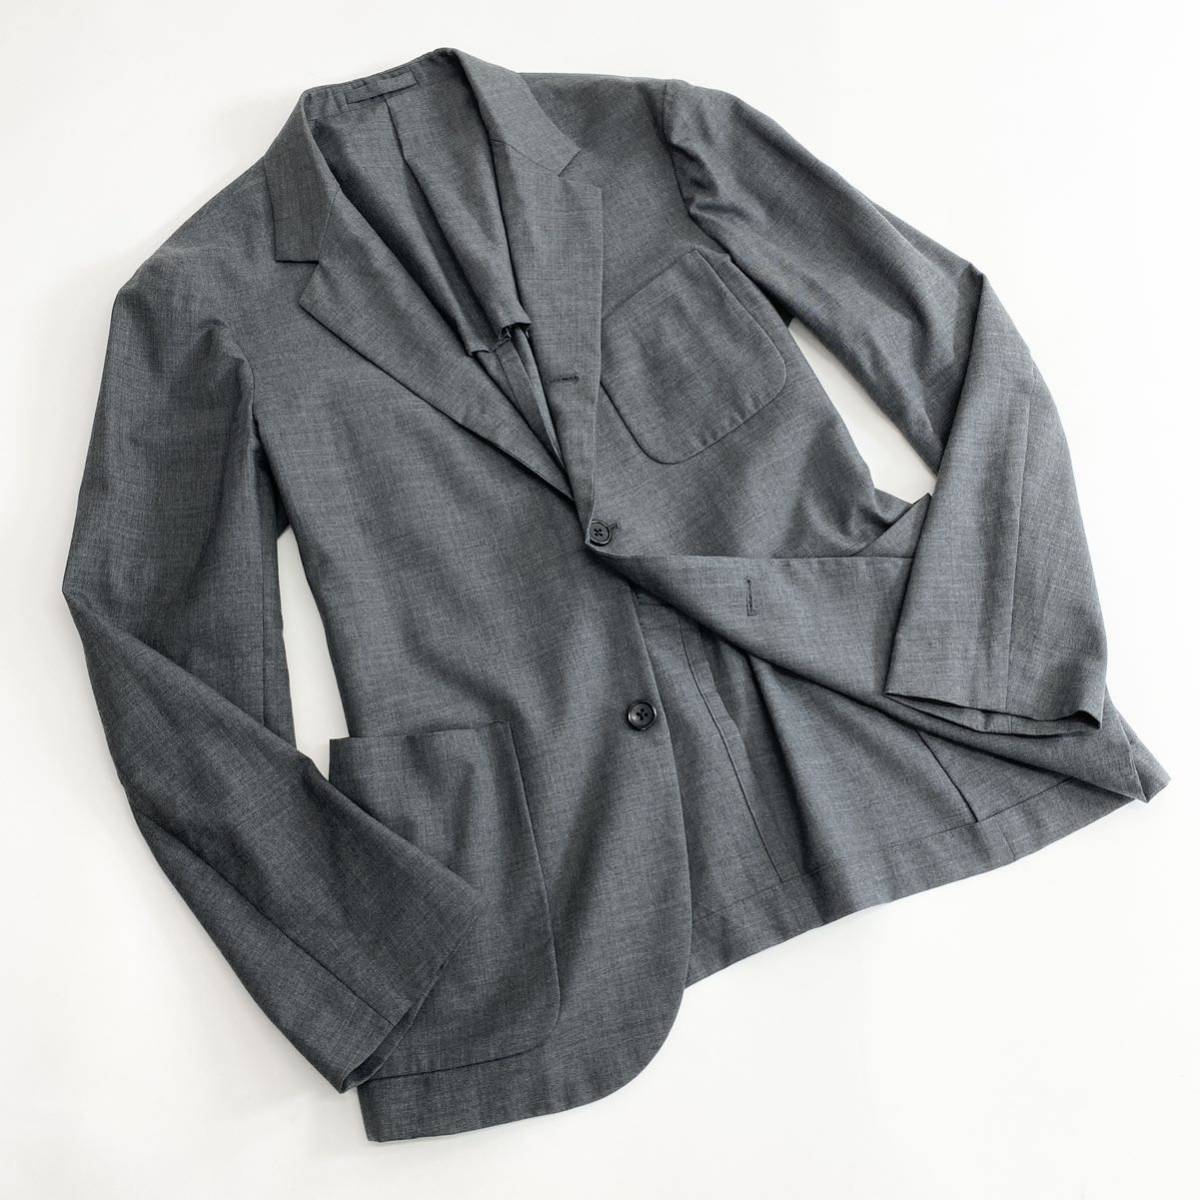 Al13 日本製 MARGARET HOWELL マーガレットハウエル テーラードジャケット サイズL グレー メンズ スーツジャケット ウール 無地 紳士服_画像1